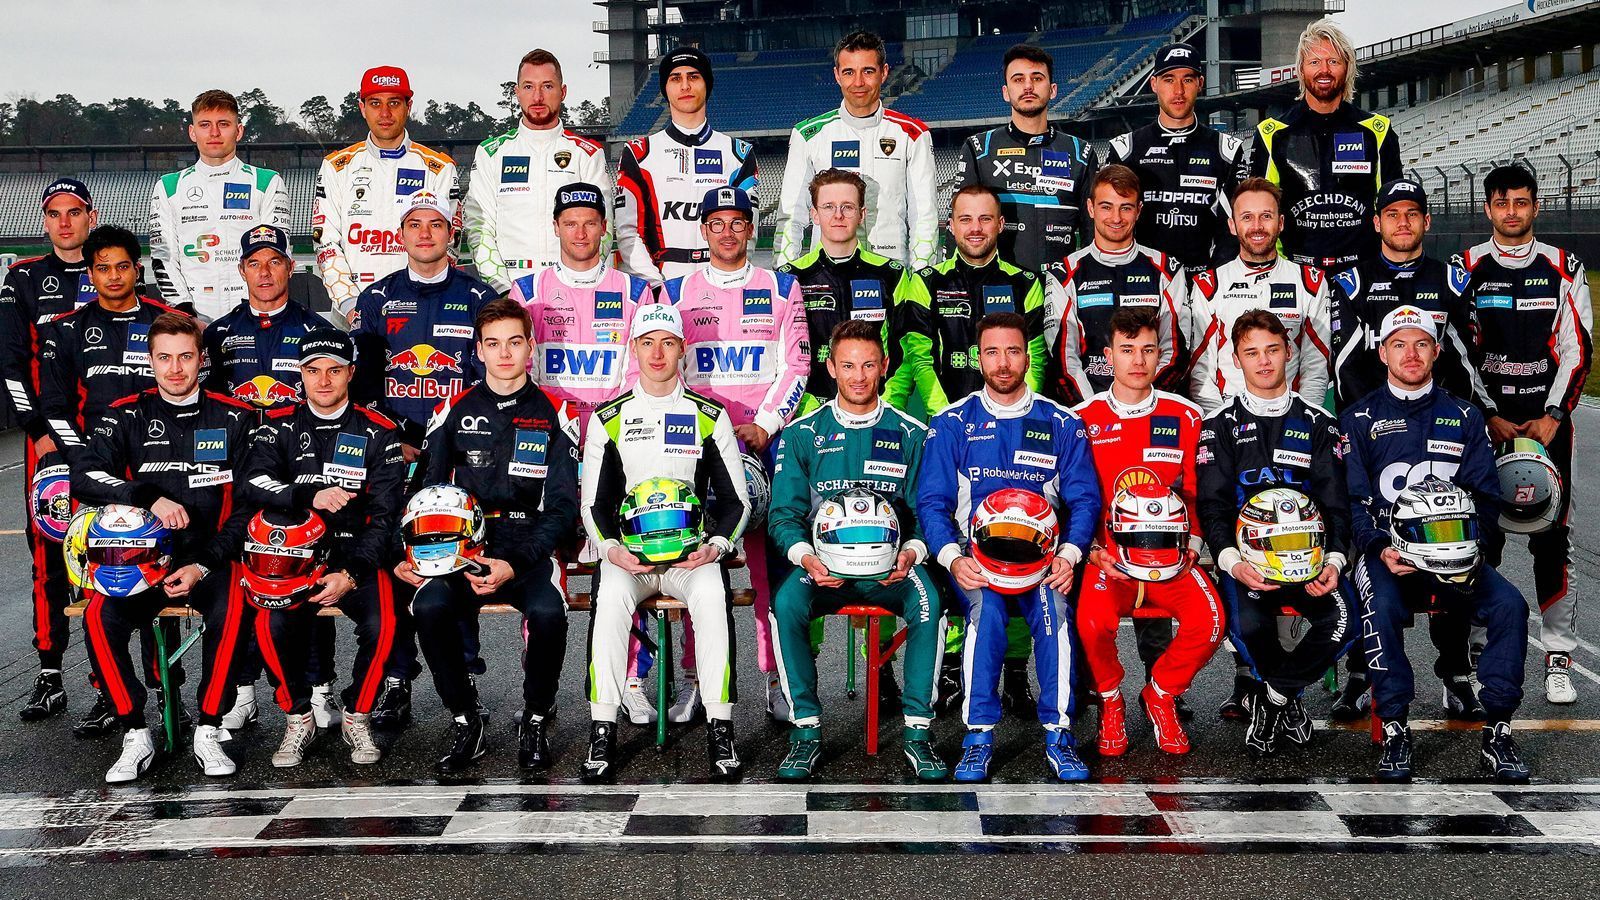 
                <strong>Die Teams und Fahrer der DTM-Saison 2022</strong><br>
                Die neue Saison der DTM läuft. Neue Gesichter, alte Champions: Wer wird der nächste DTM-Meister?
              